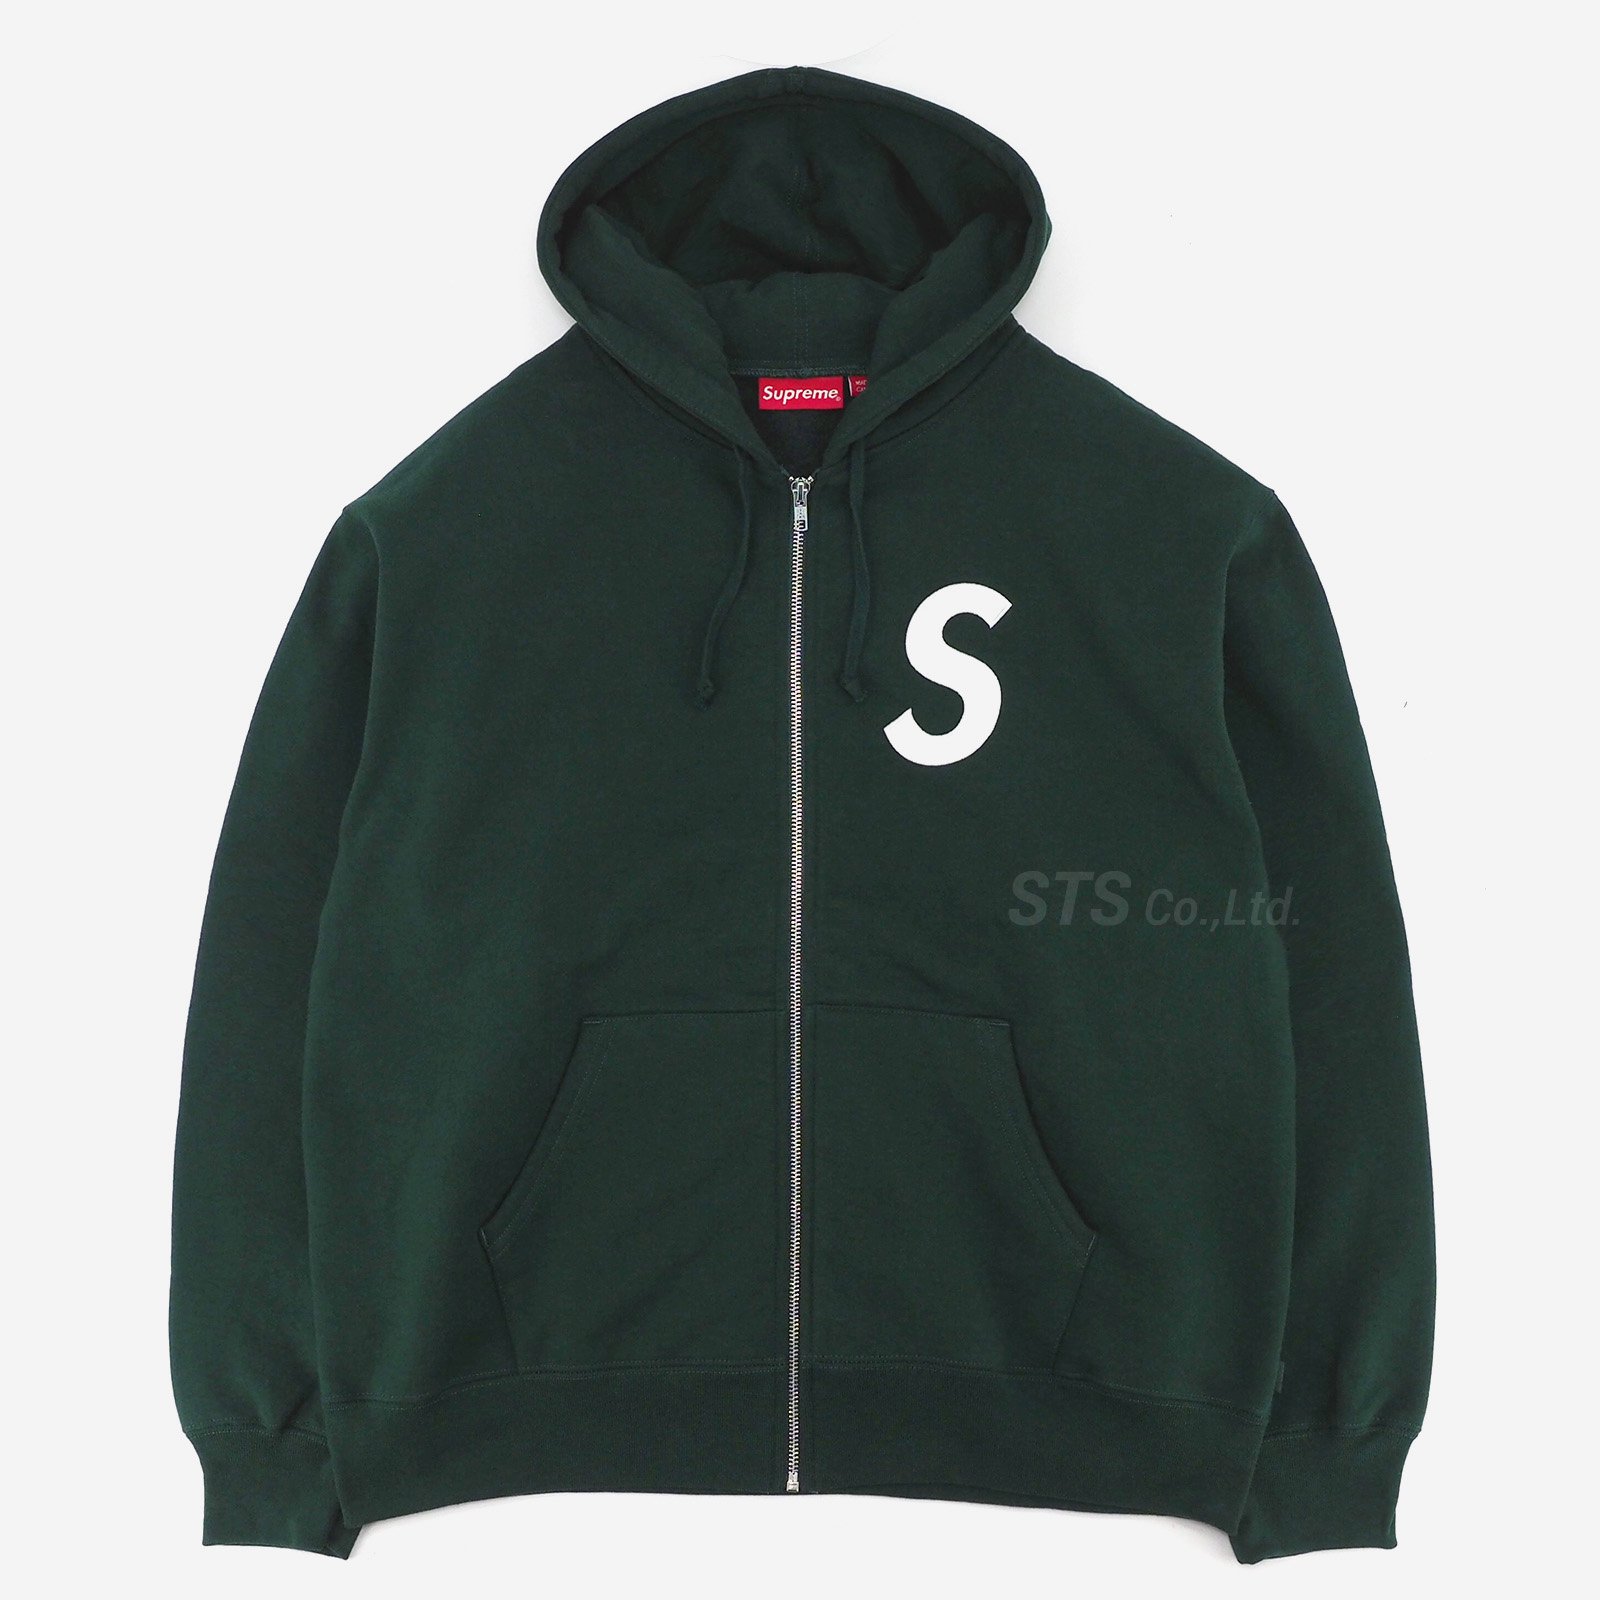 Supreme   S Logo Zip Up Hooded Sweatshirt   UG.SHAFT